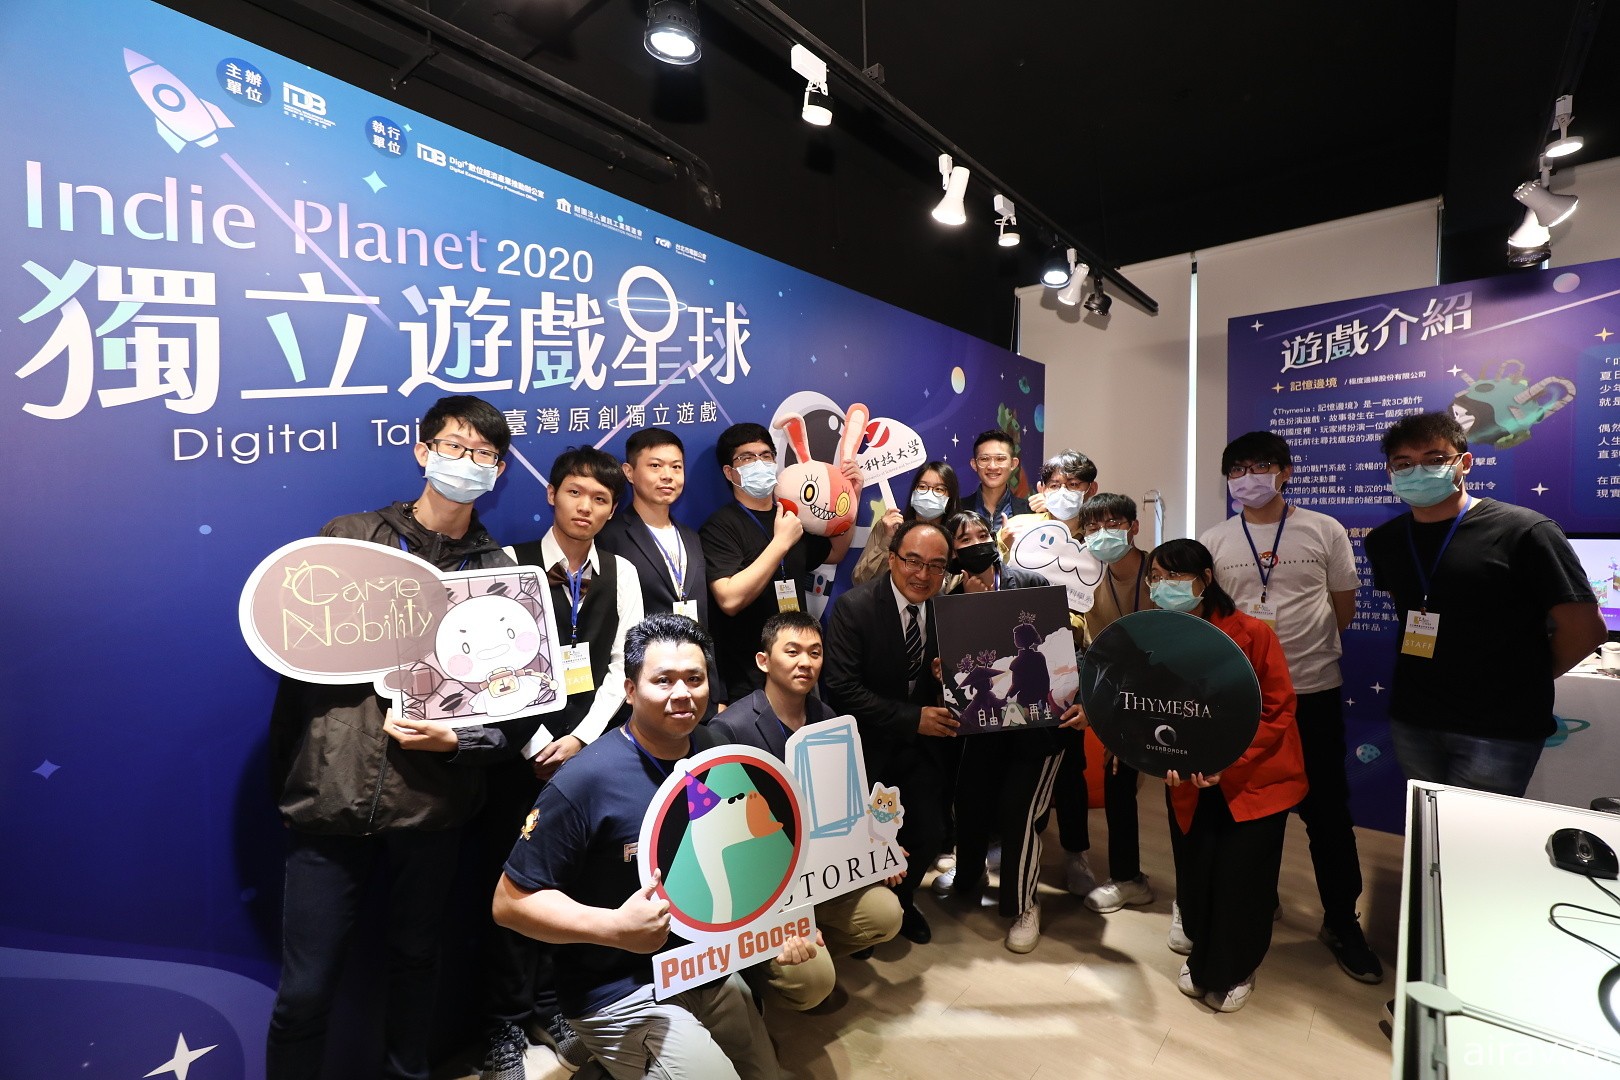 Digital Taipei 打造“Indie Planet 星球”独立游戏展区 《我满怀歧异的意识代码》等现场亮相